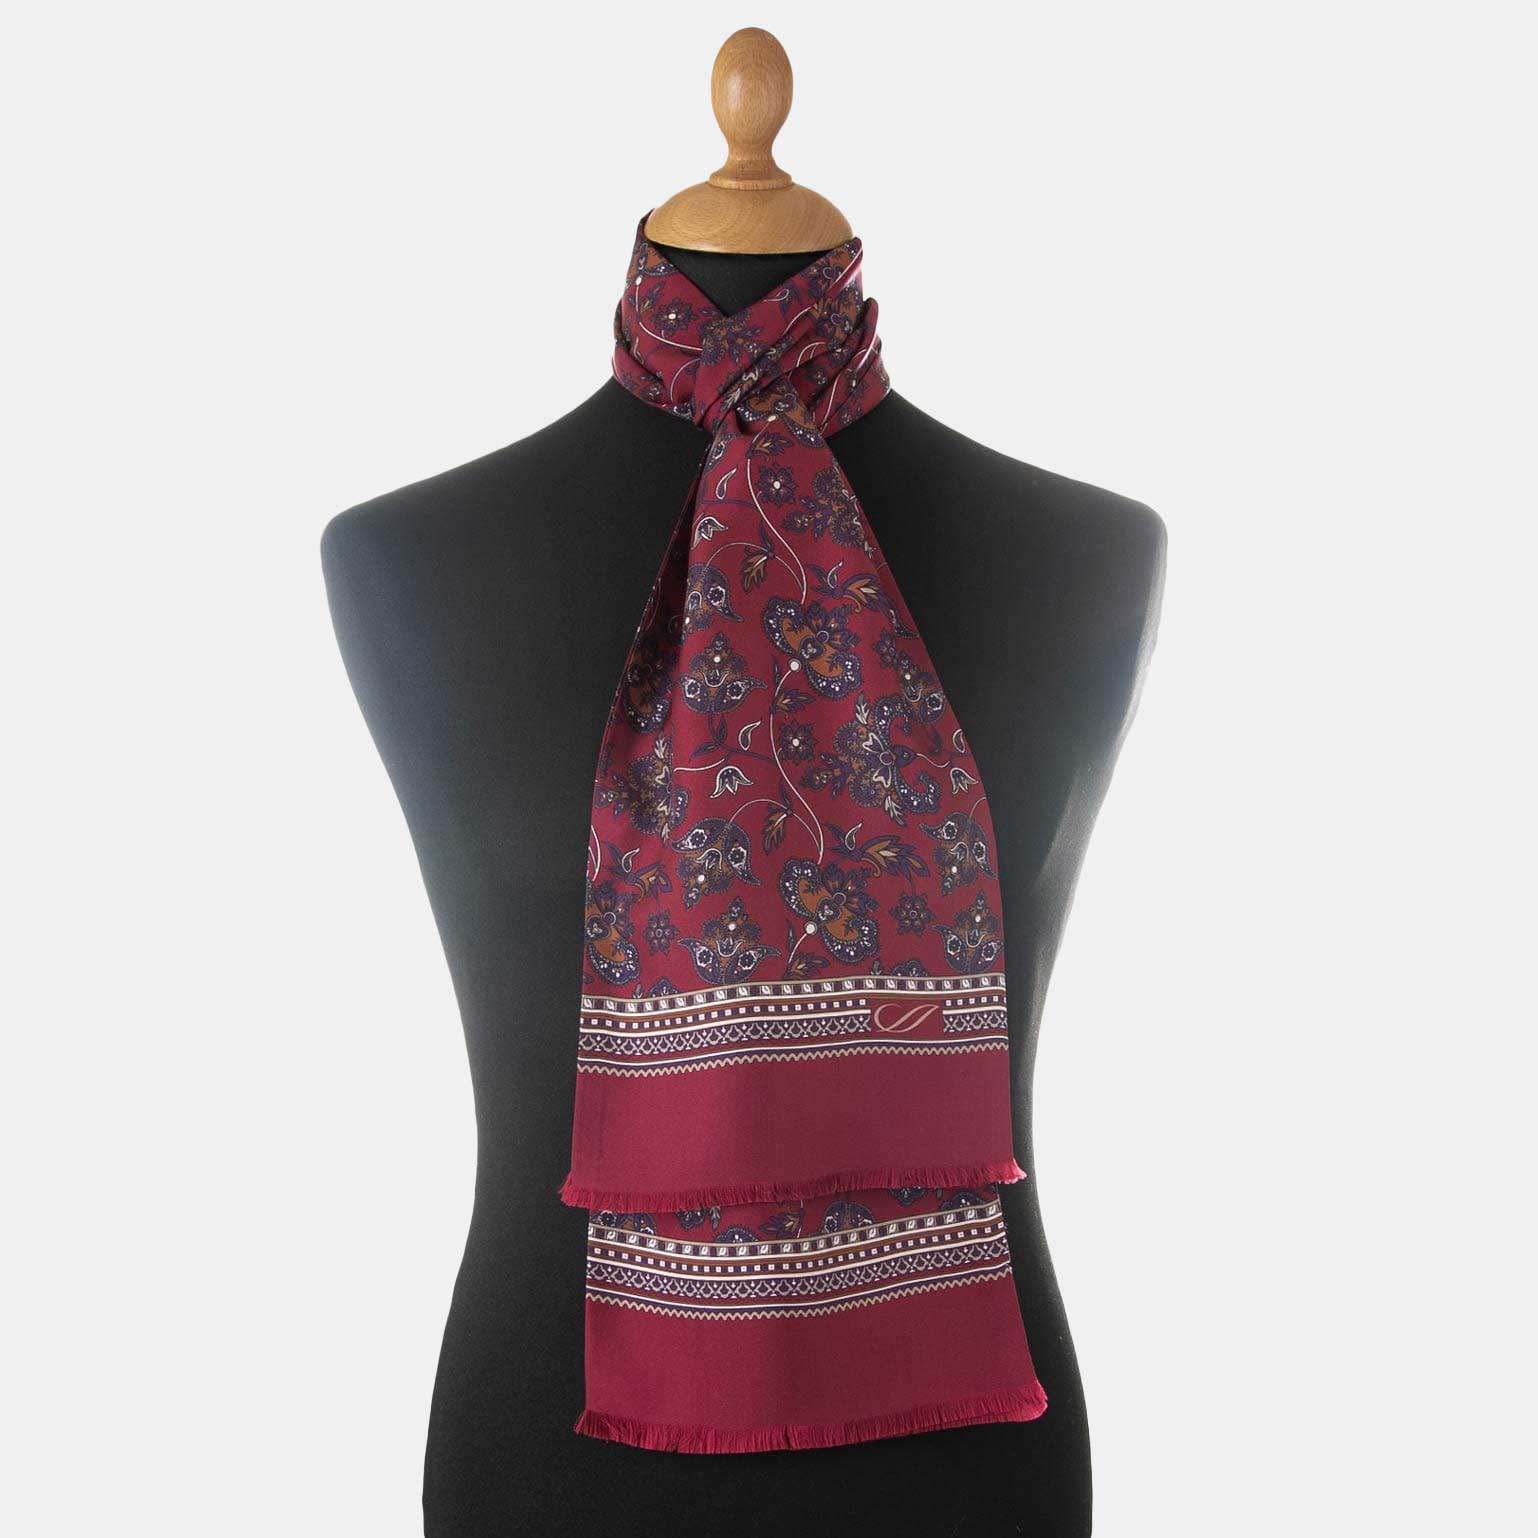 https://elizabetta.net/cdn/shop/products/luxury-burgundy-silk-dress-scarf-made-in-italy_fdac05ee-9f2e-477d-a49e-2abd640b86fe_2048x.jpg?v=1704698348